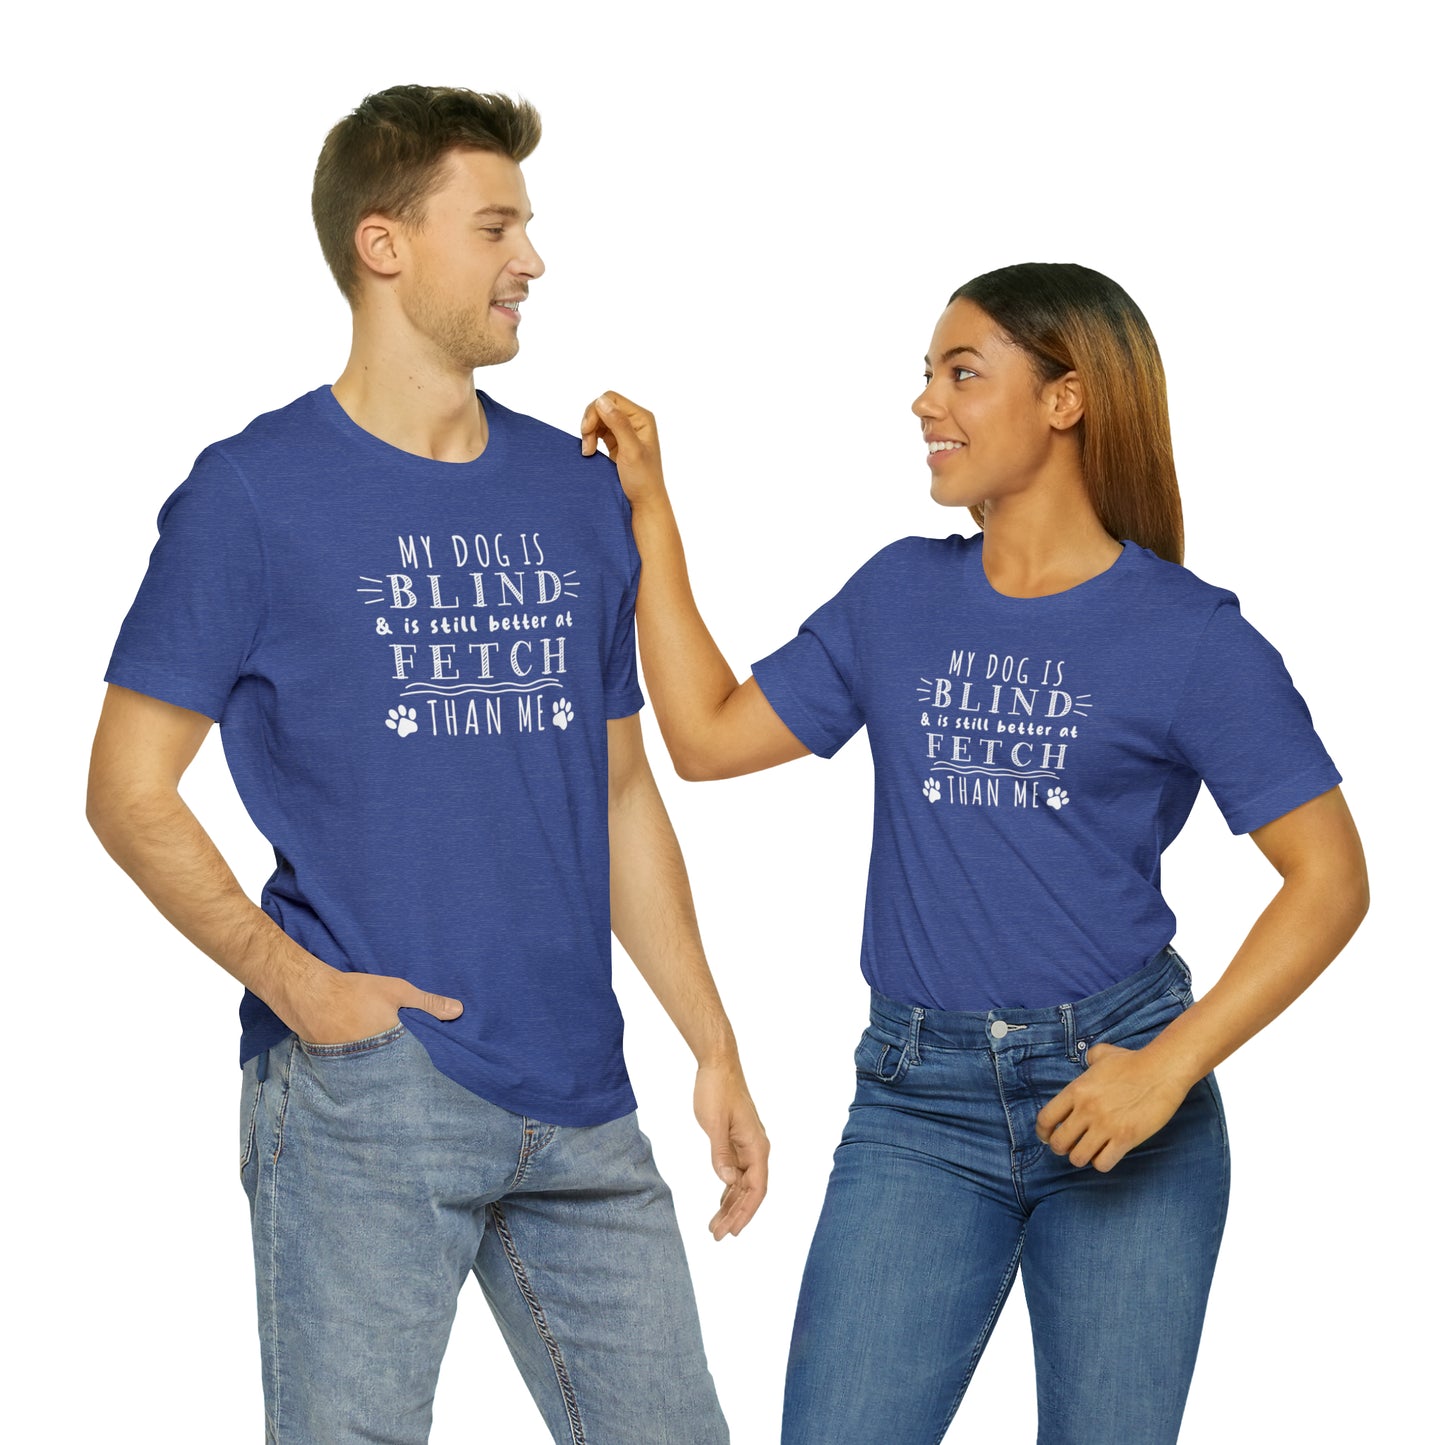 Blind Dog T-shirt Funny Women & Men